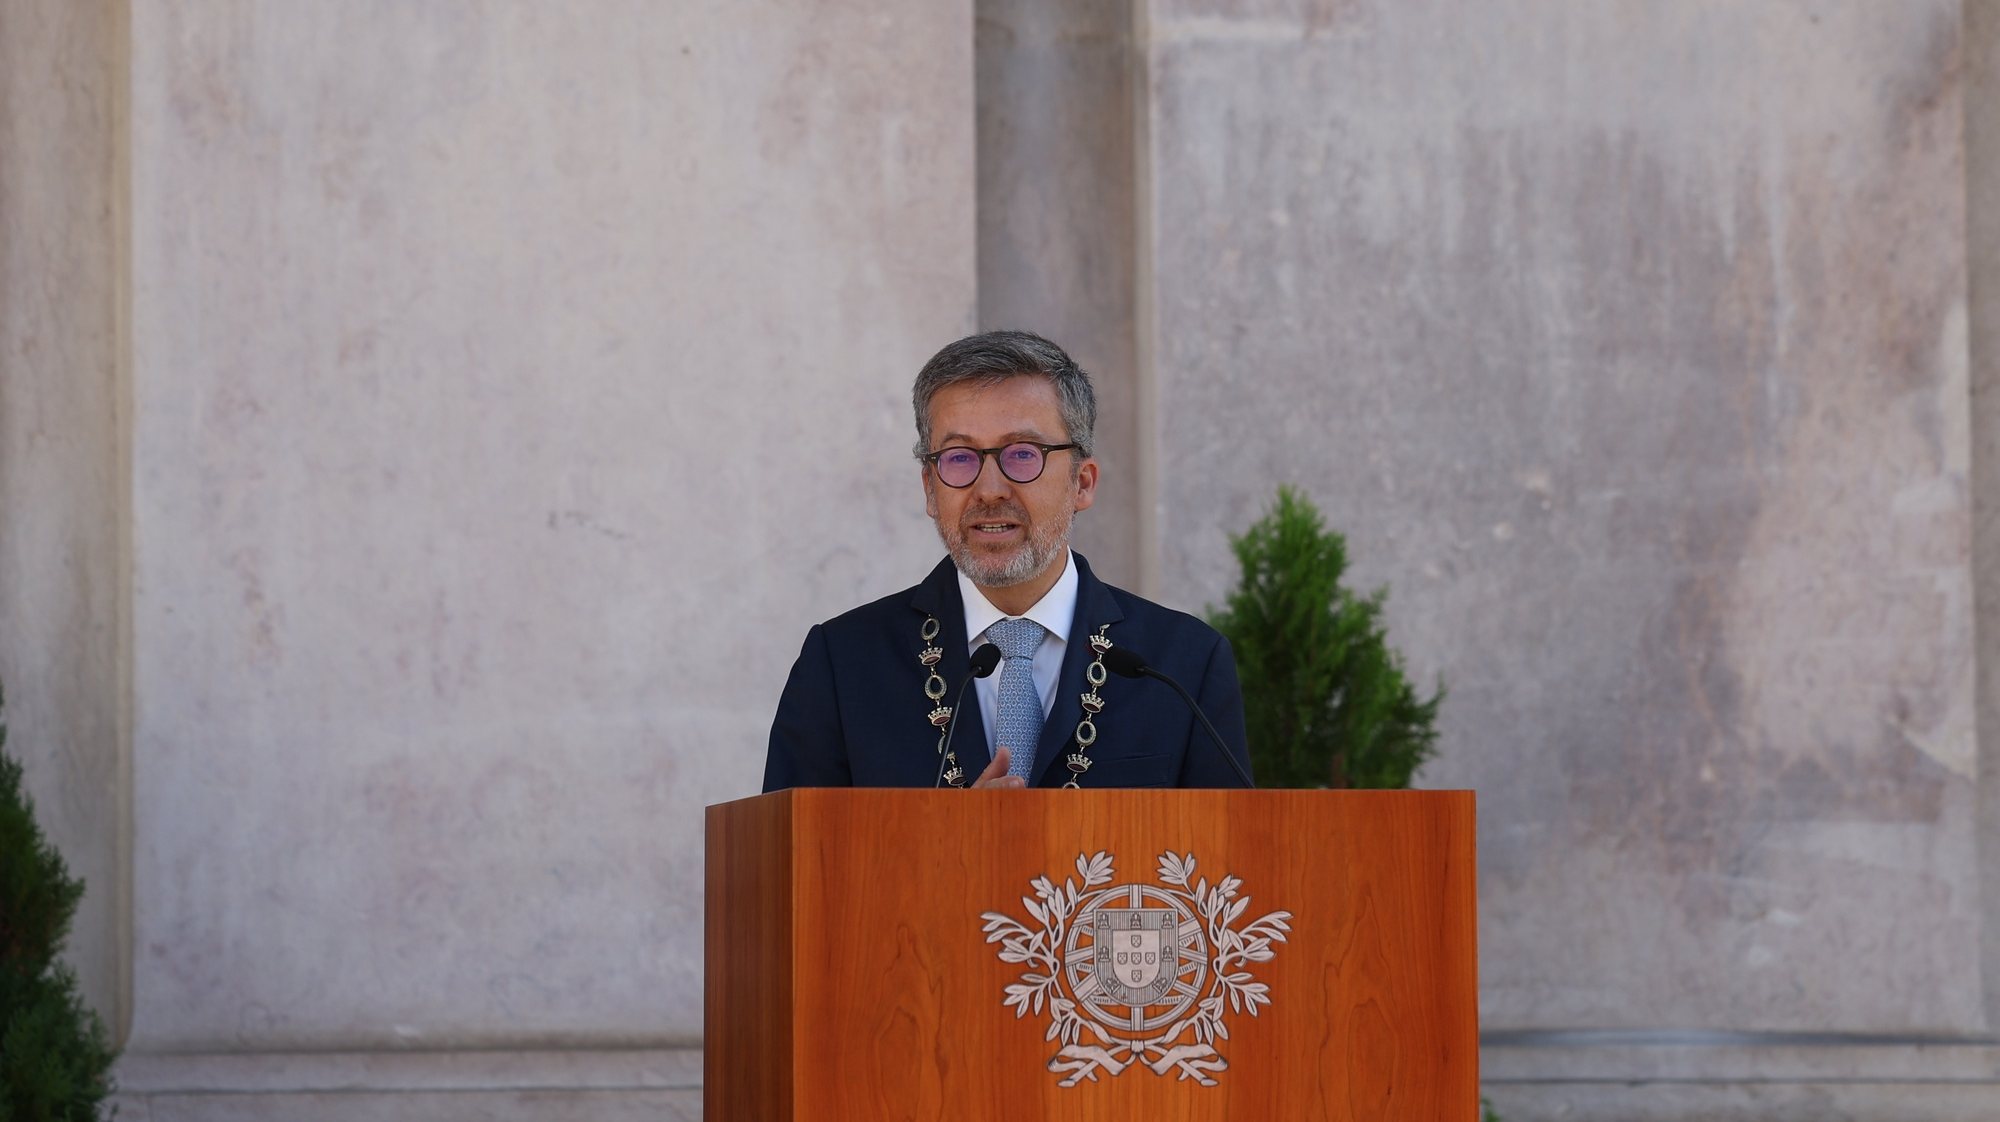 U presidente da Câmara Municipal de Lisboa Carlos Moedas discursa durante a cerimónia comemorativa do 113º  aniversário da Implantação da República Portuguesa, na Câmara Municipal de Lisboa, 5 de outubro de 2923. TIAGO PETINGA/LUSA